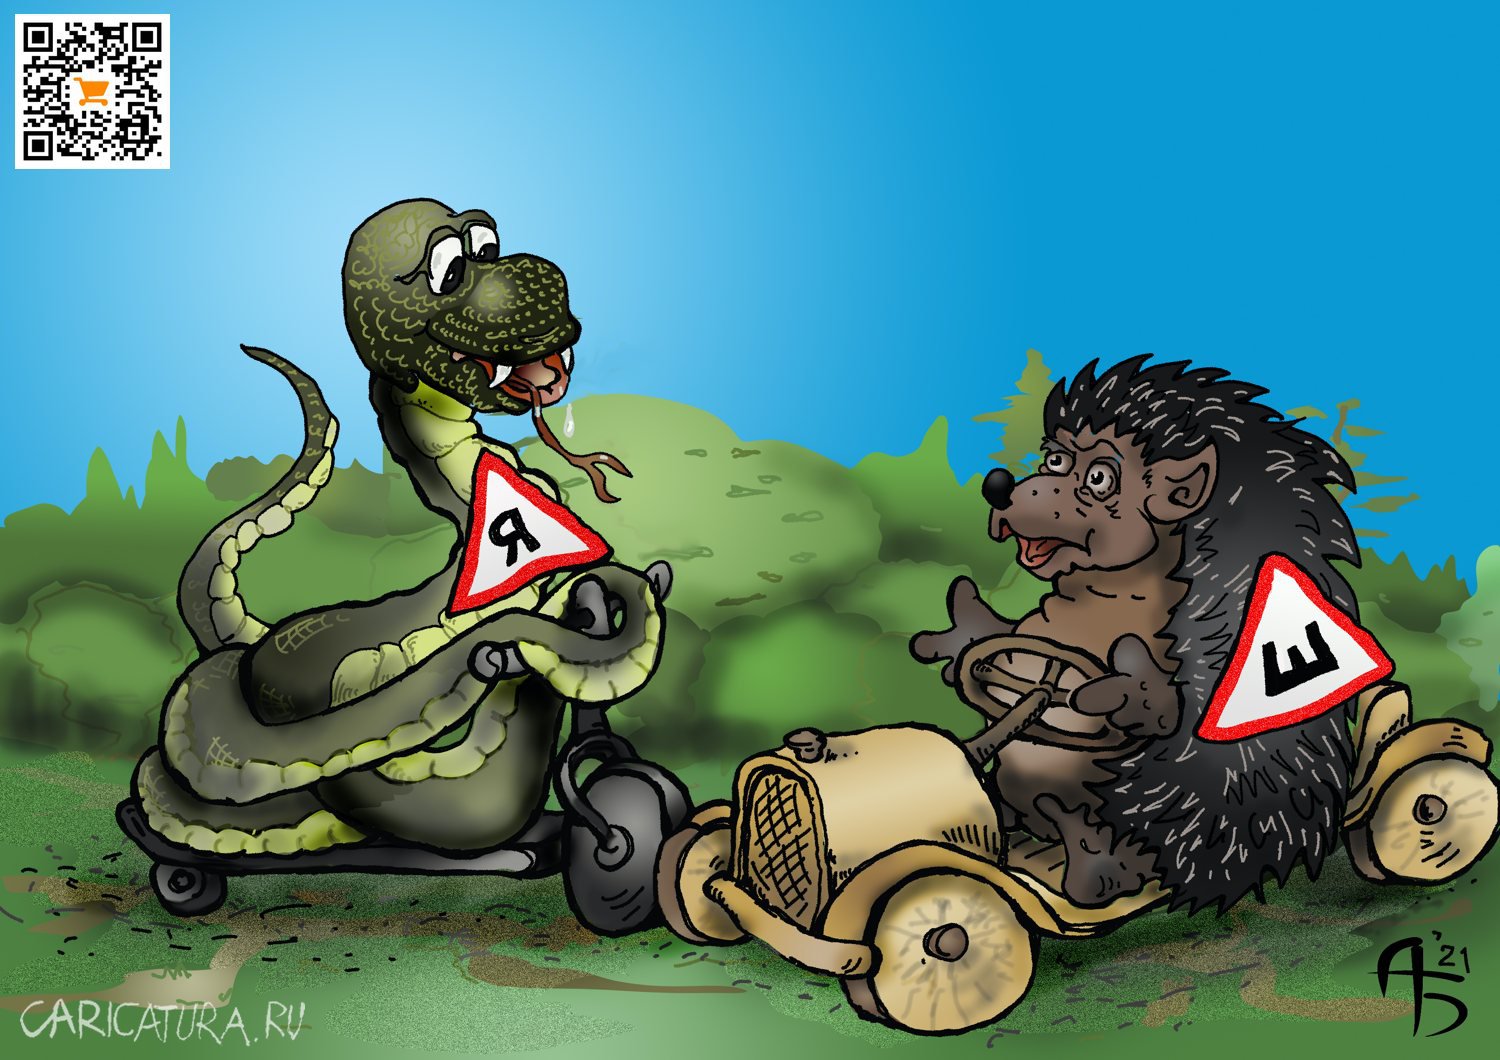 Карикатура "Шипы и яды", Александр Богданов